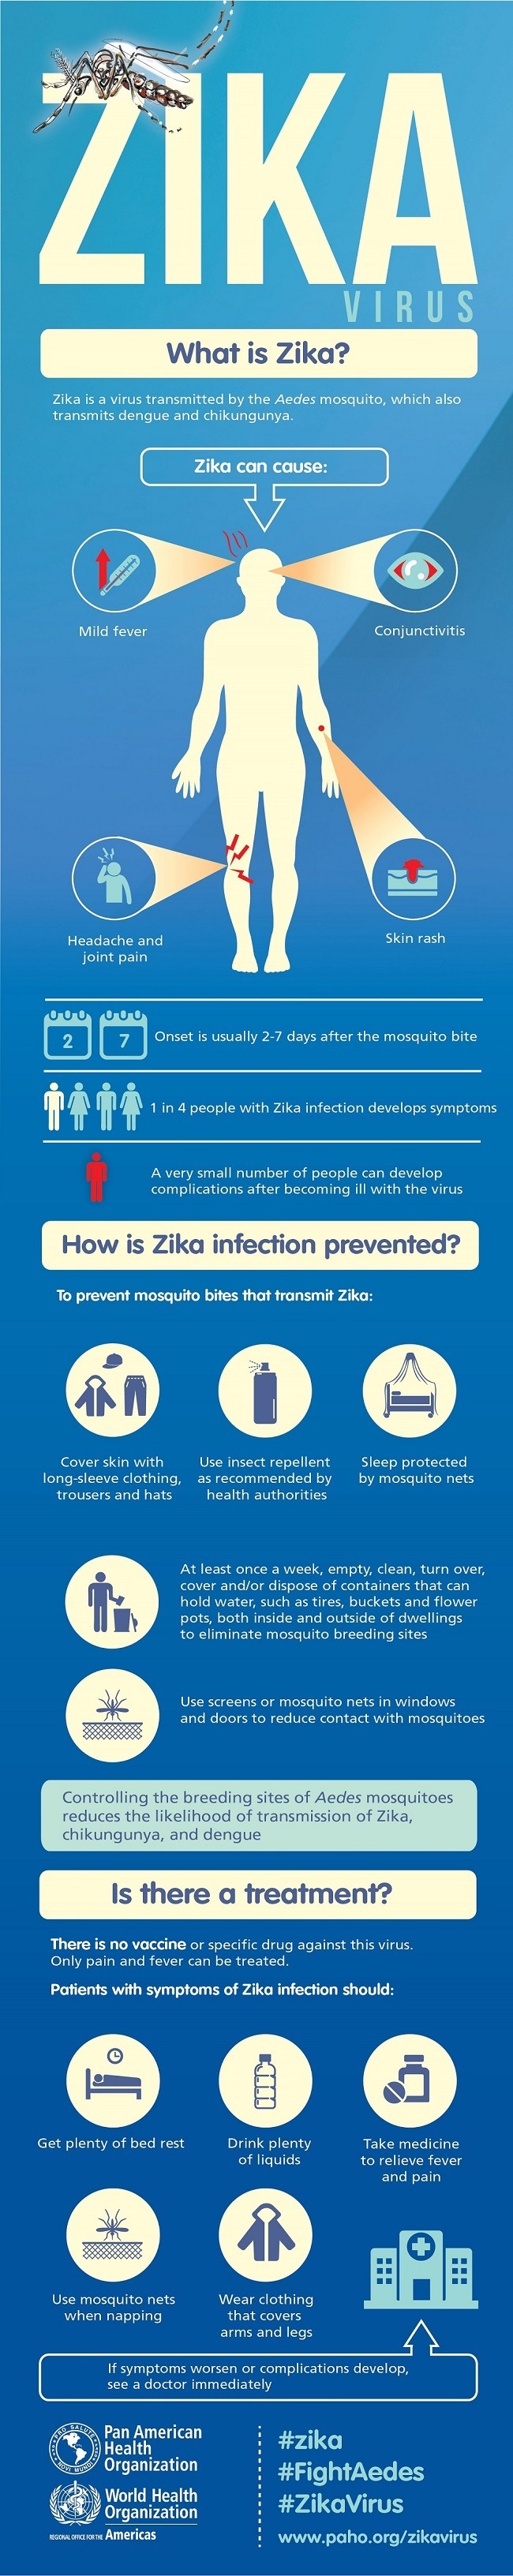 Zika infographic